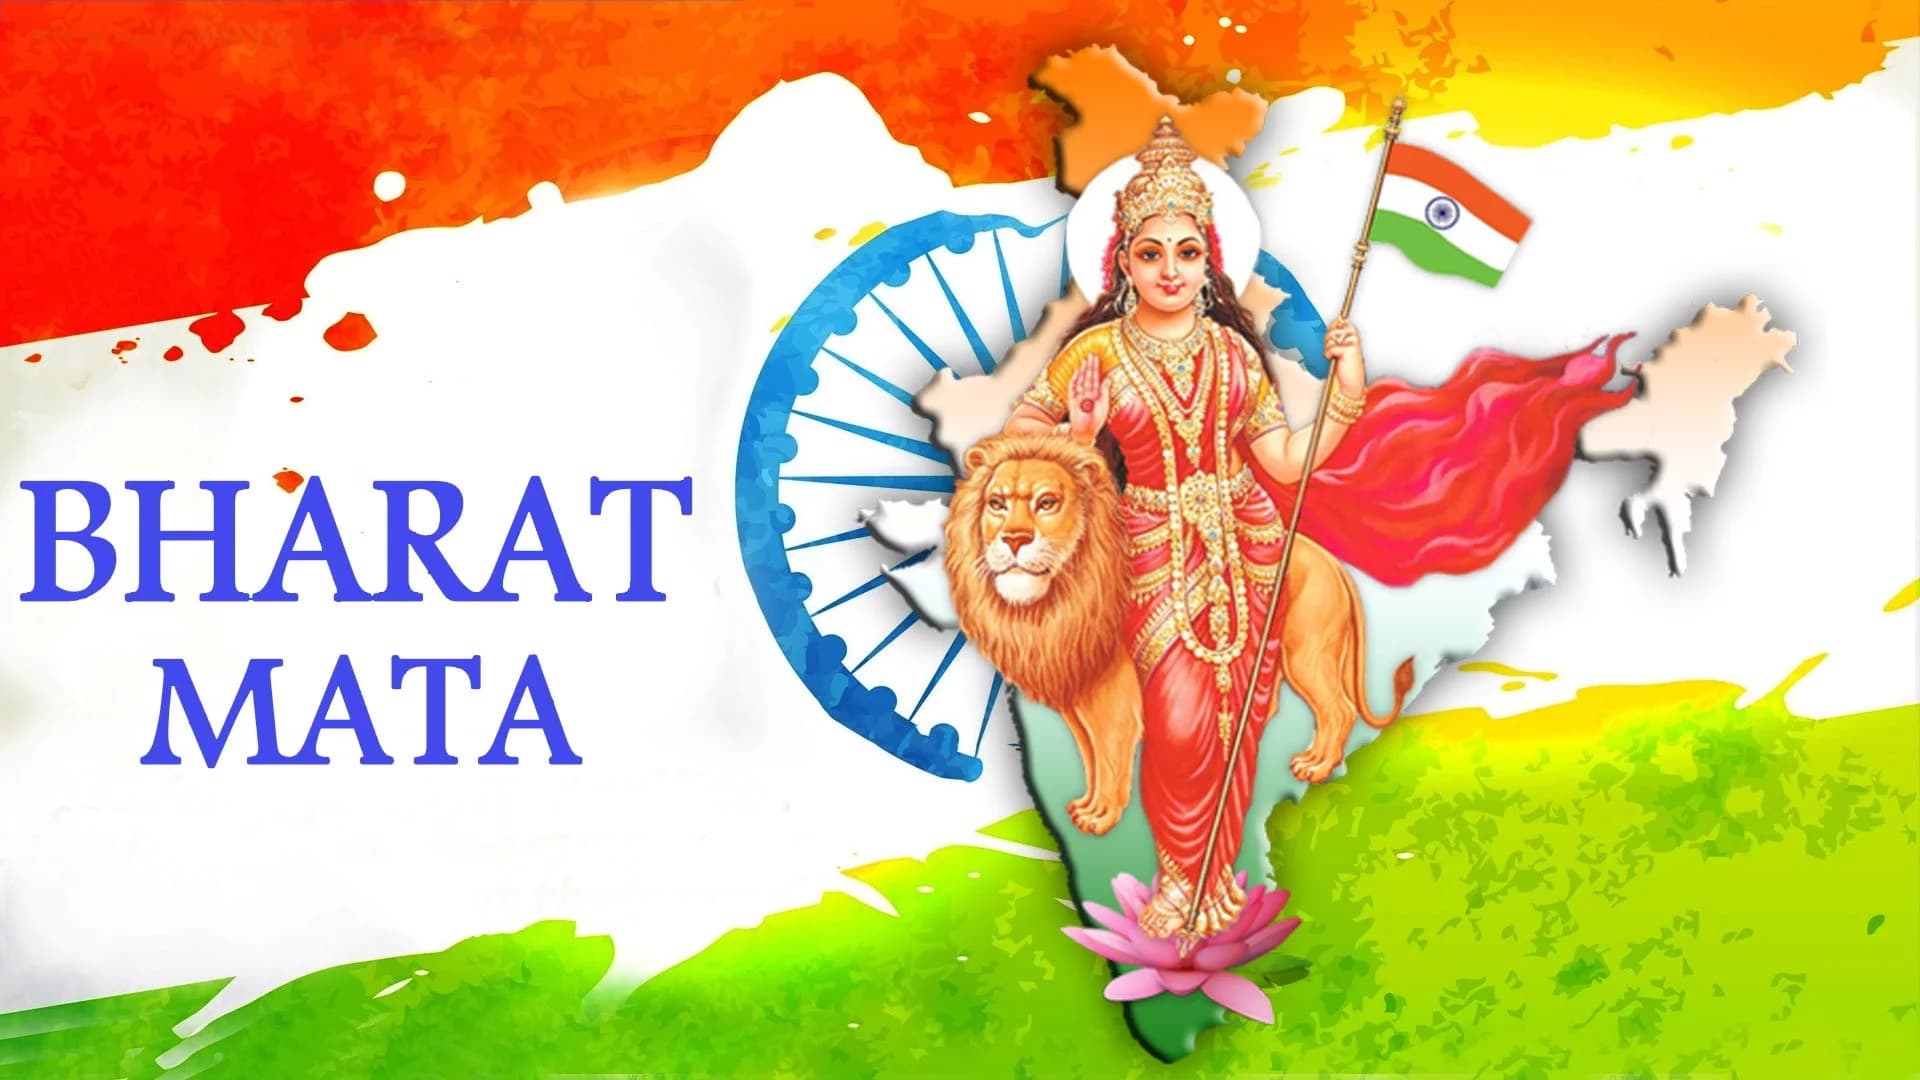 Bharat Mata Wallpapers - Top Những Hình Ảnh Đẹp